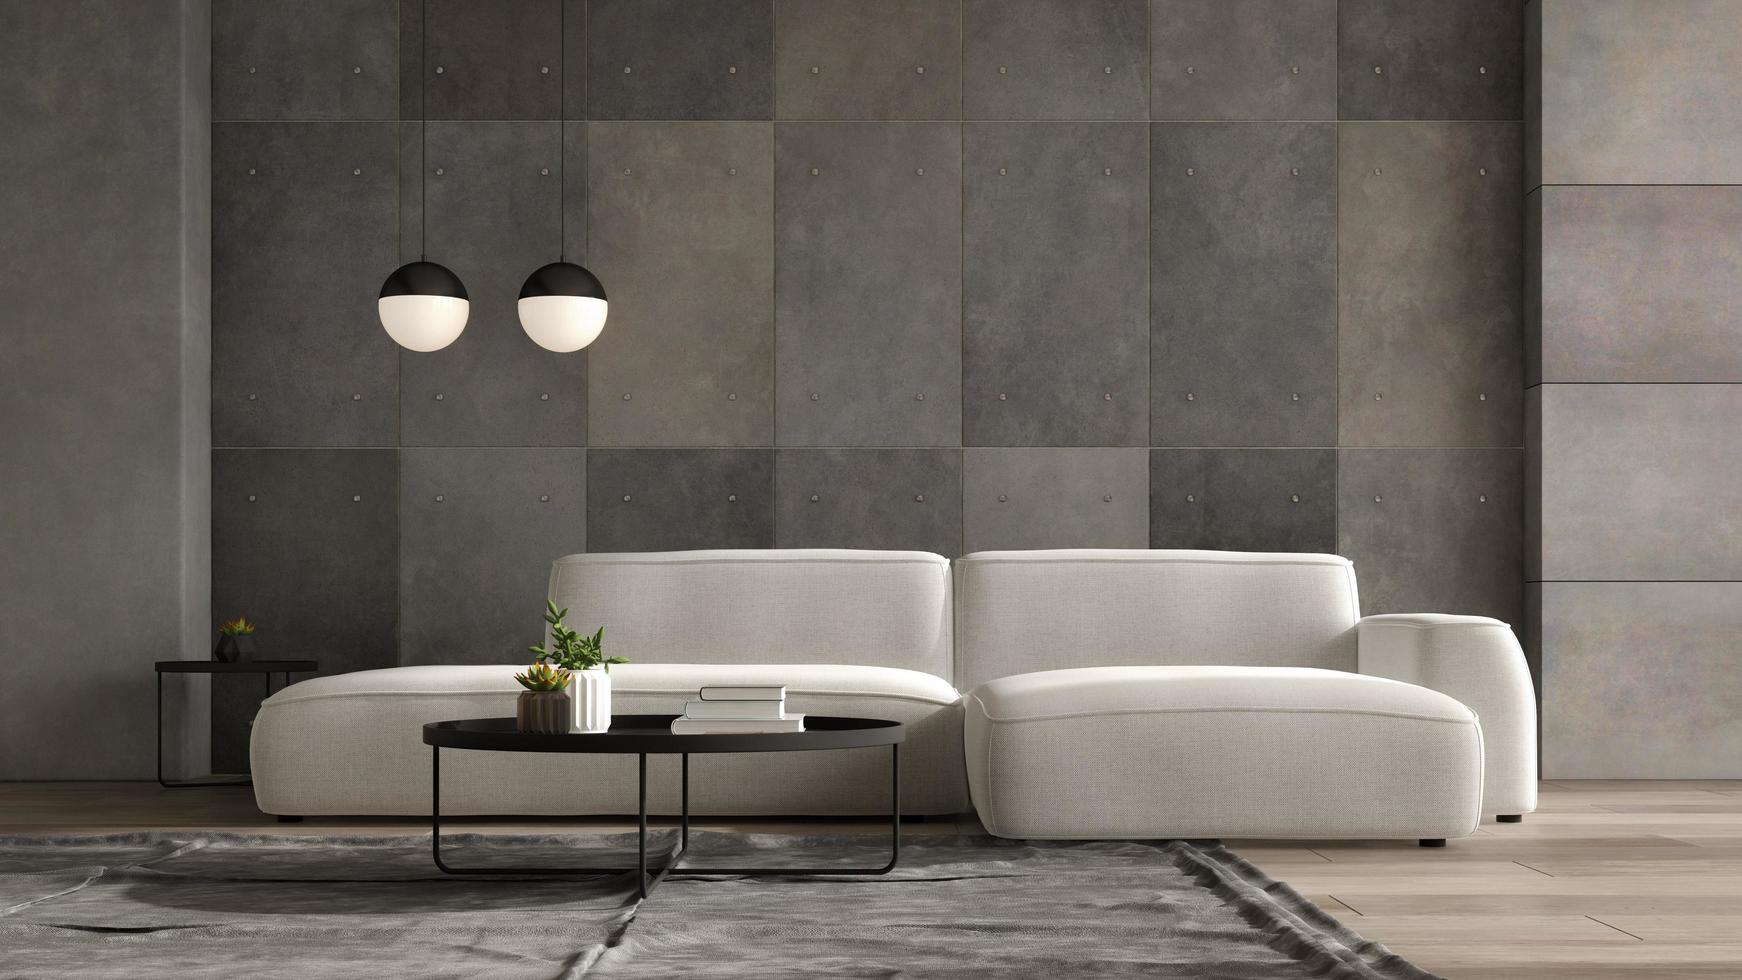 interior minimalista de una moderna sala de estar en la ilustración 3d foto